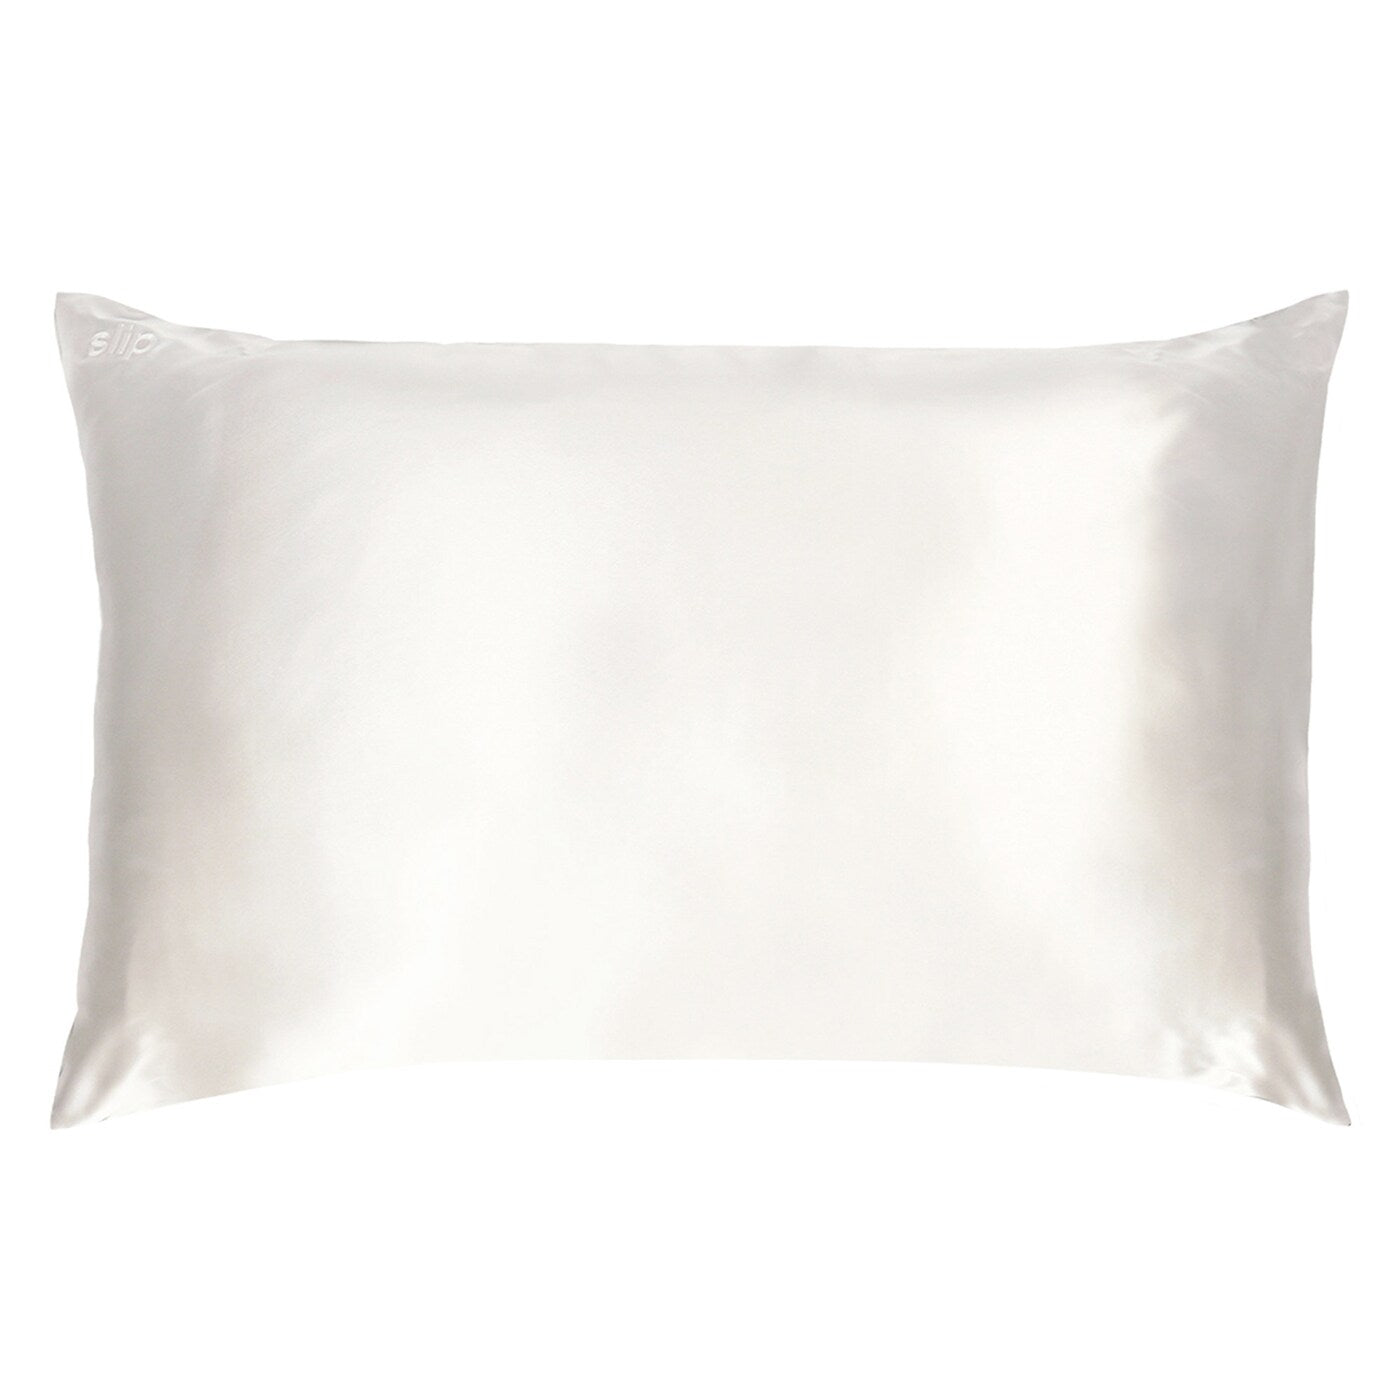 Slip Pure silk pillowcase - white, two sizes